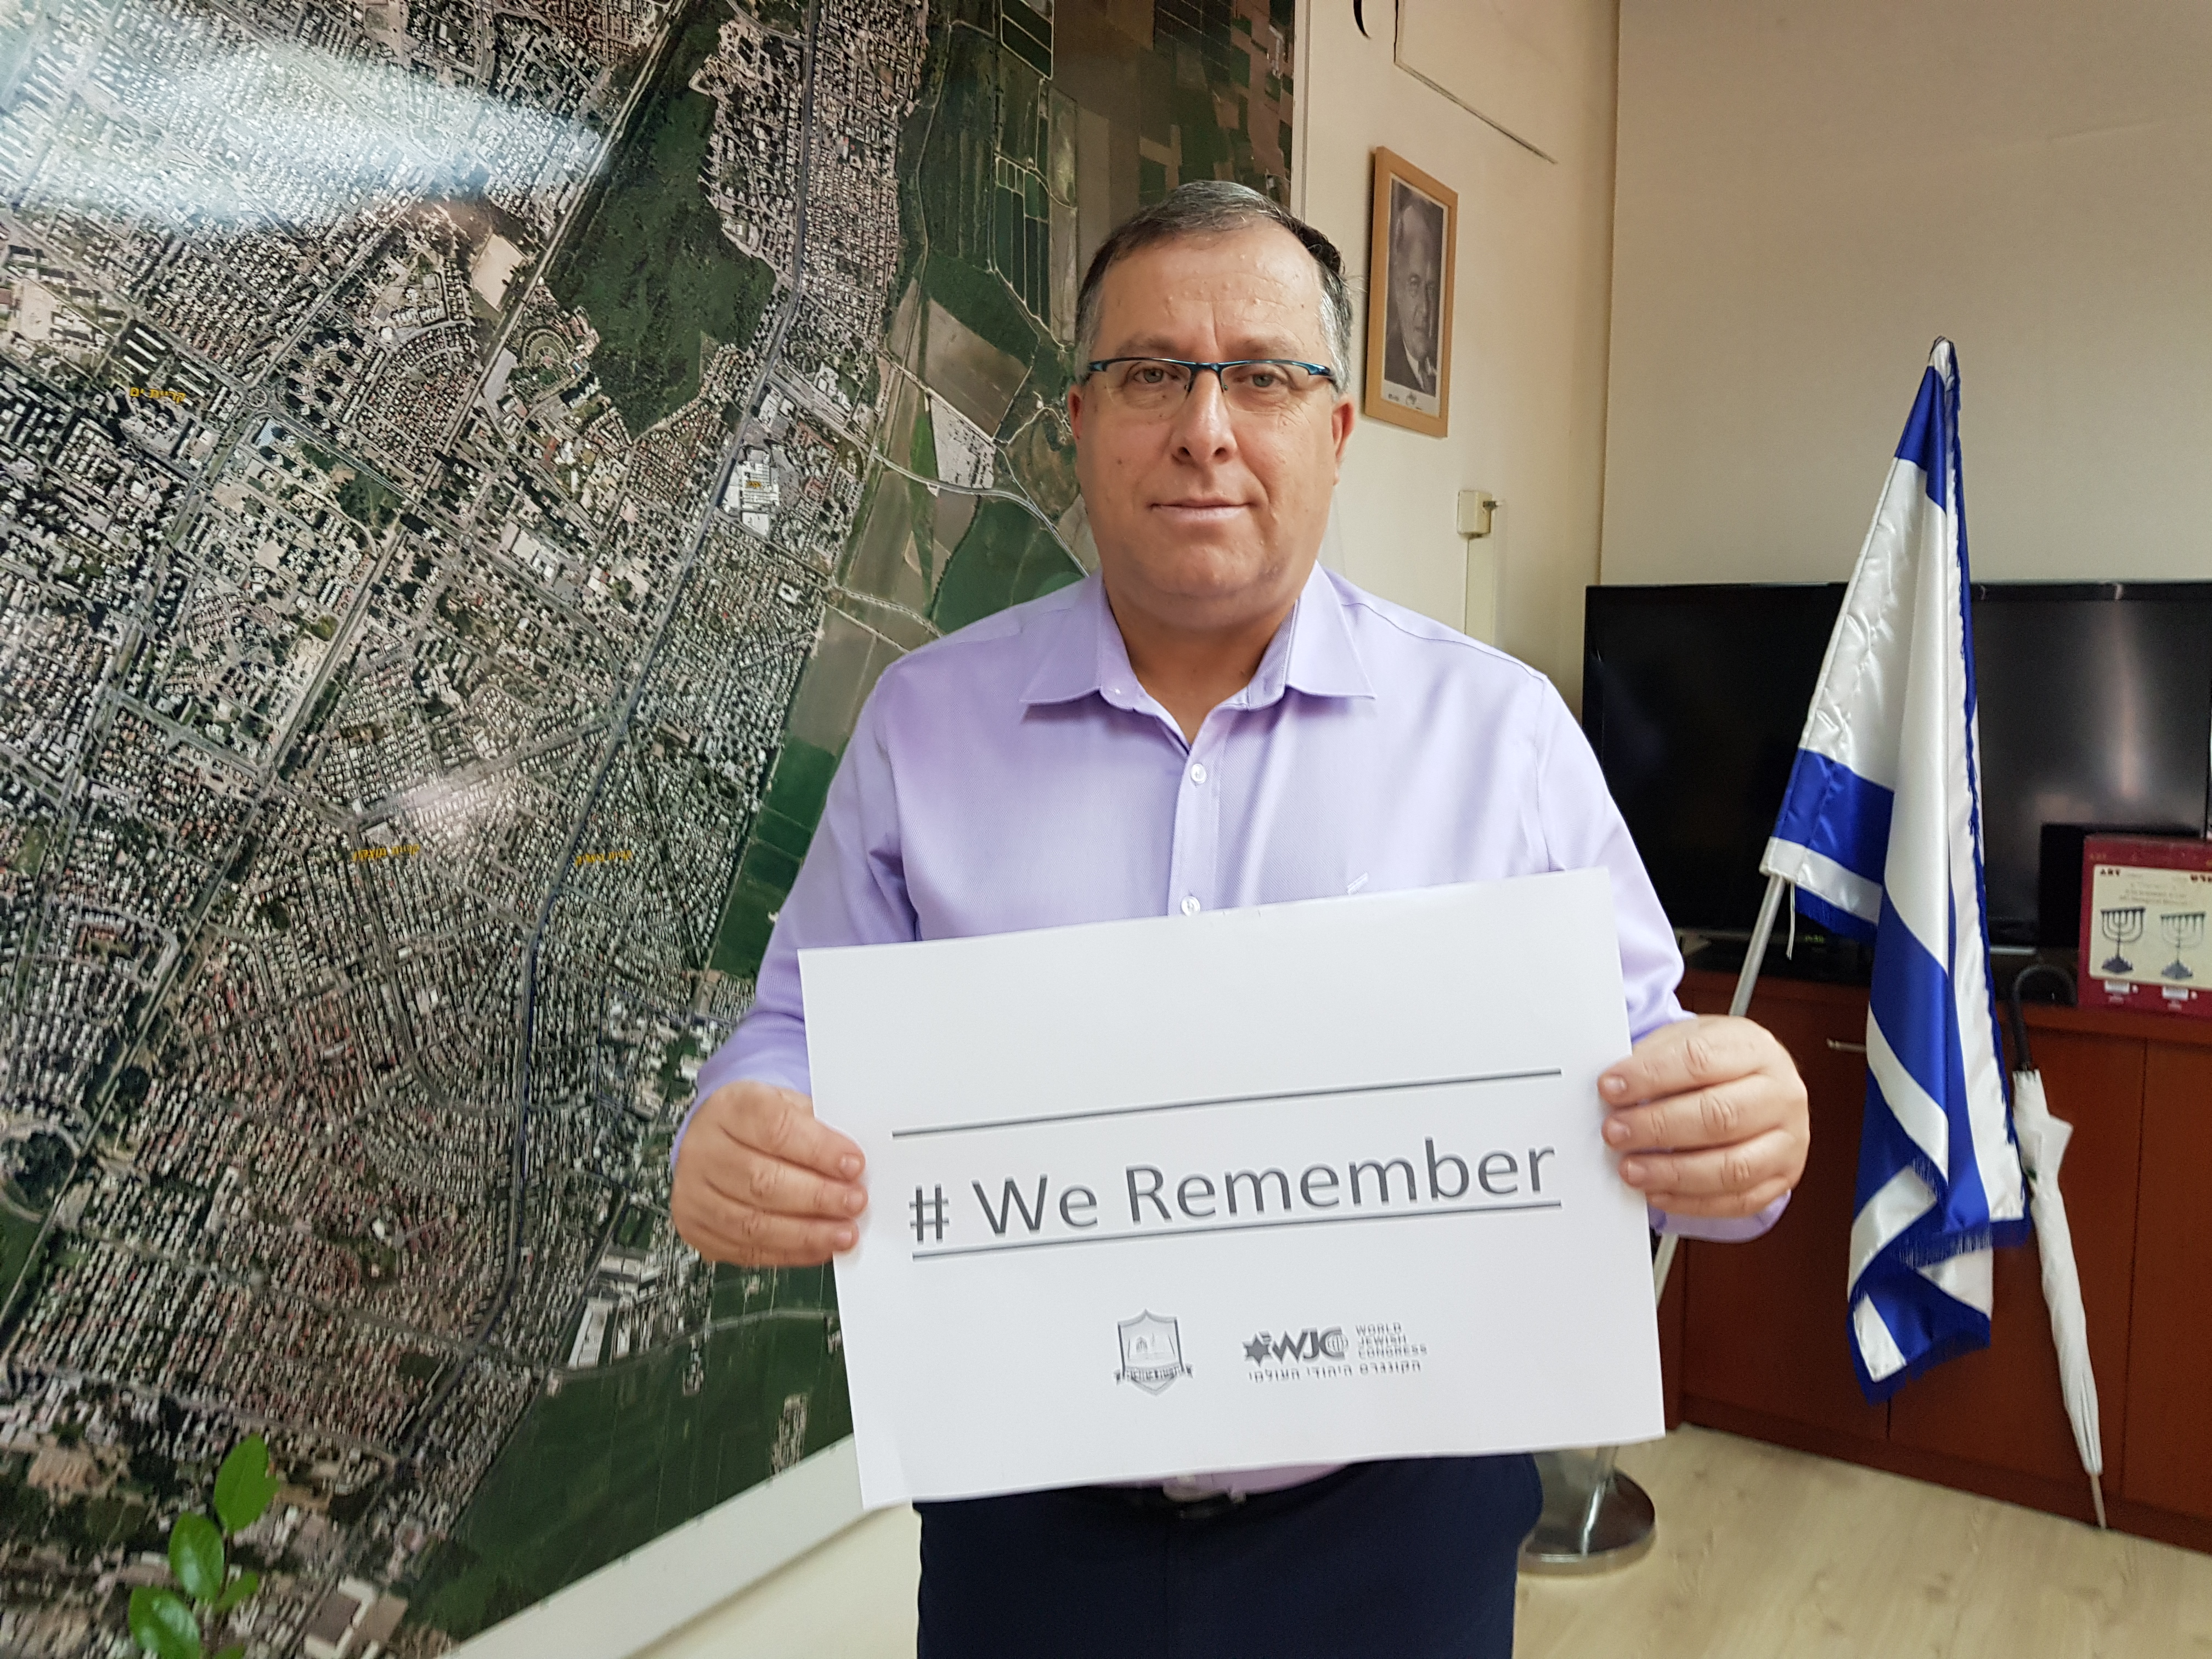 מנכ"ל הקונגרס היהודי העולמי רוברט זינגר הודה לראש העיר, אלי דוקורסקי על השתתפותו בקמפיין #WeRemember